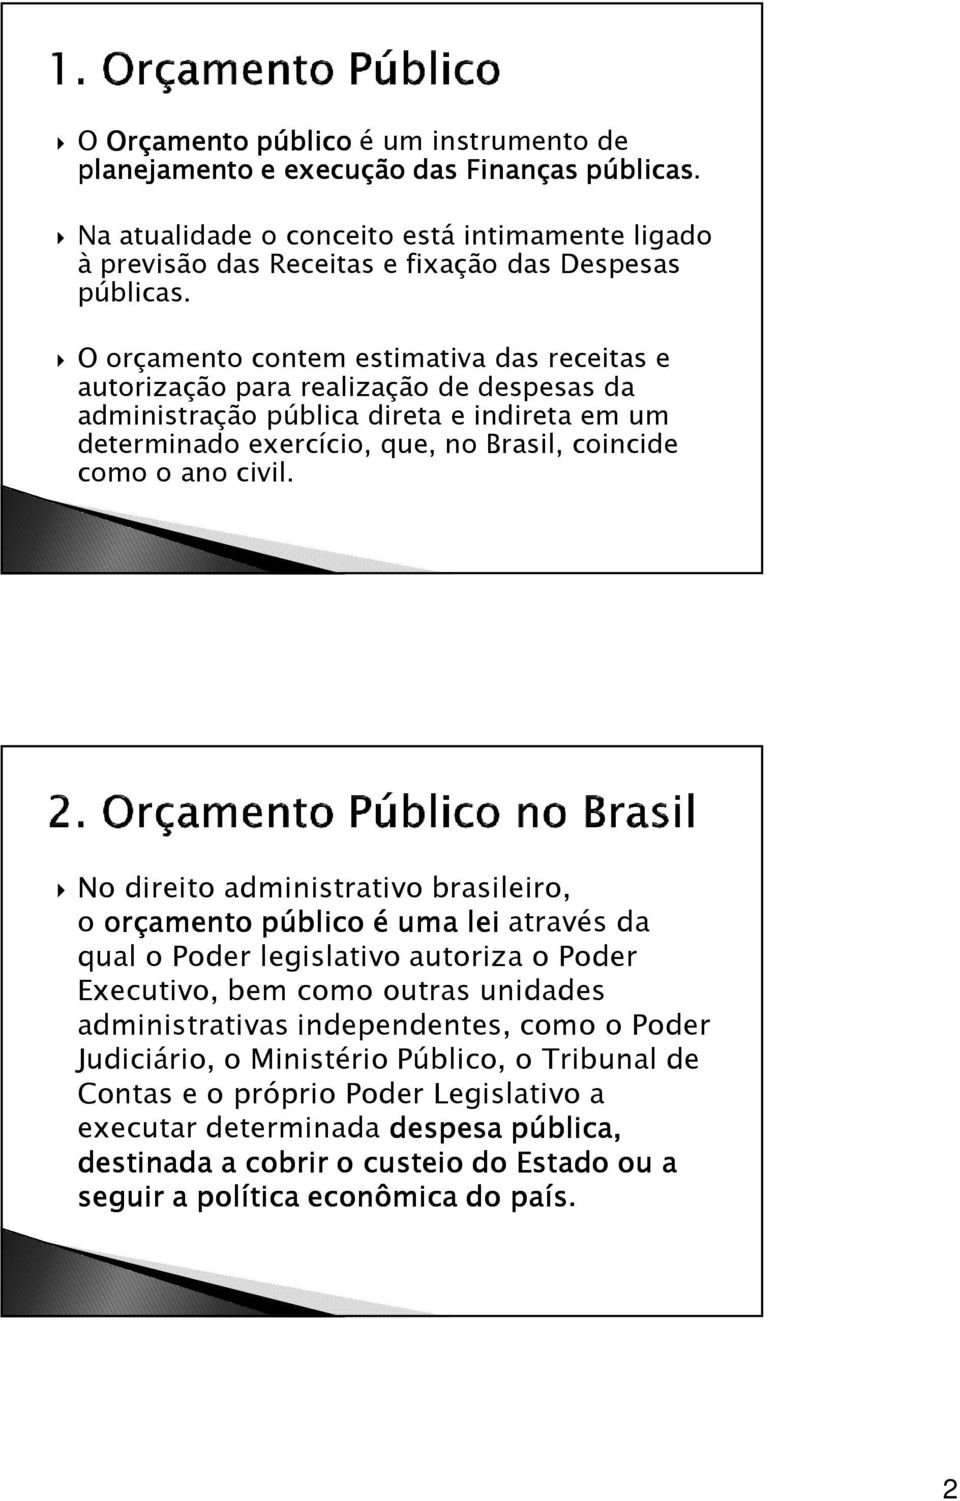 No direito administrativo brasileiro, o orçamento público é uma lei através da qual o Poder legislativo autoriza o Poder Executivo, bem como outras unidades administrativas independentes, como o